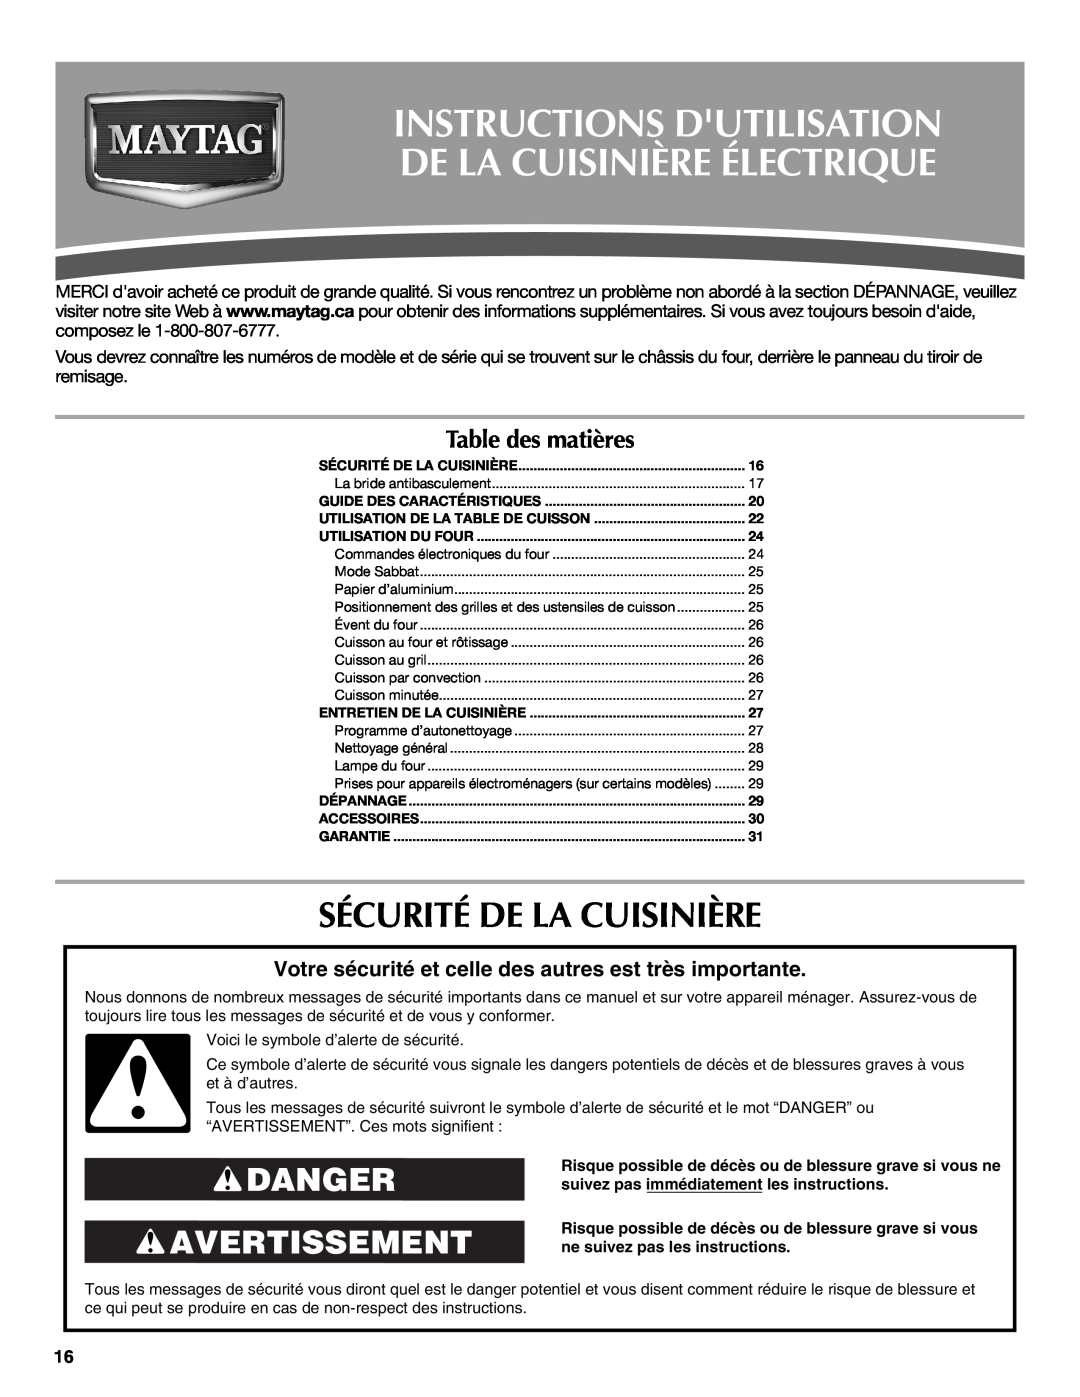 Maytag W10239461A Instructions Dutilisation De La Cuisinière Électrique, Sécurité De La Cuisinière, Danger Avertissement 